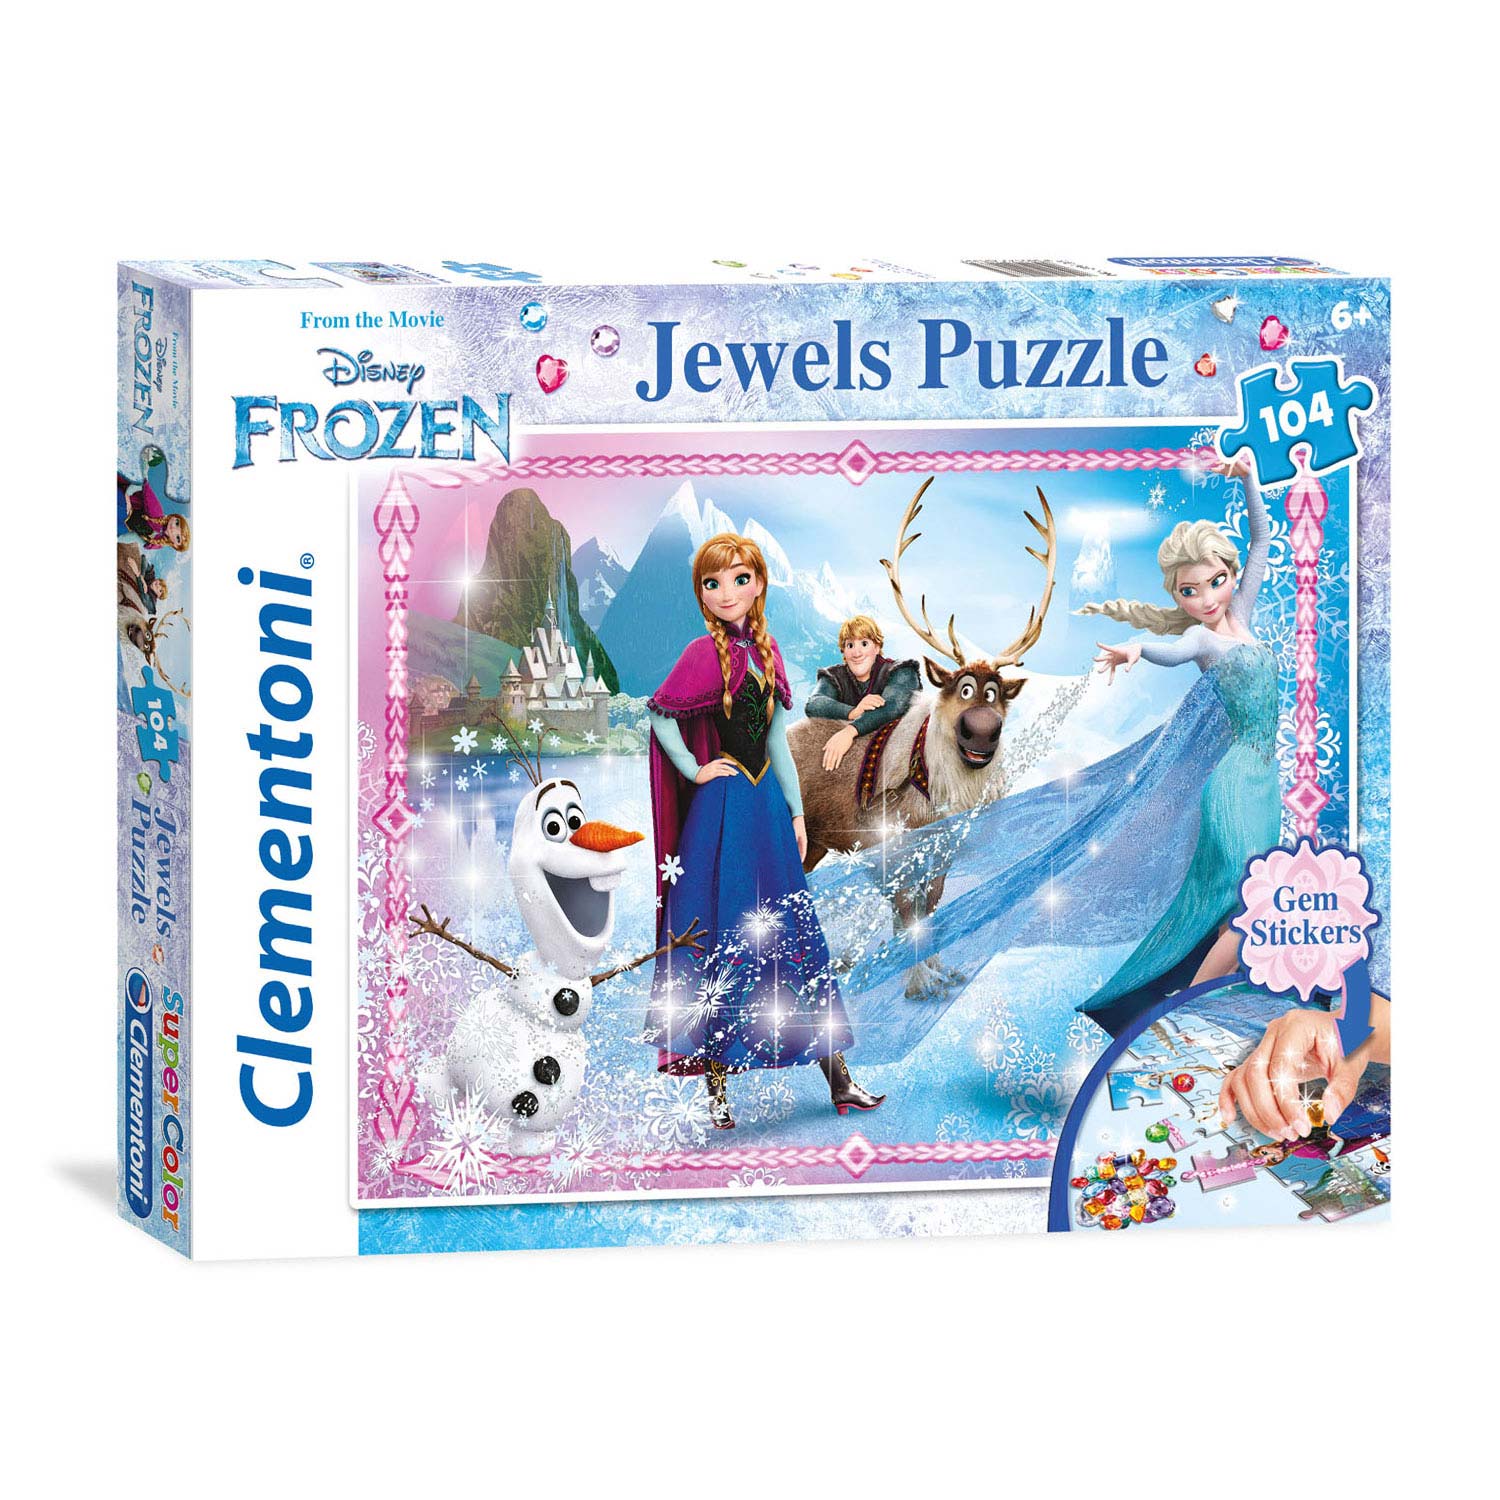 Clementoni Jewels Puzzel Disney Frozen, 104st.